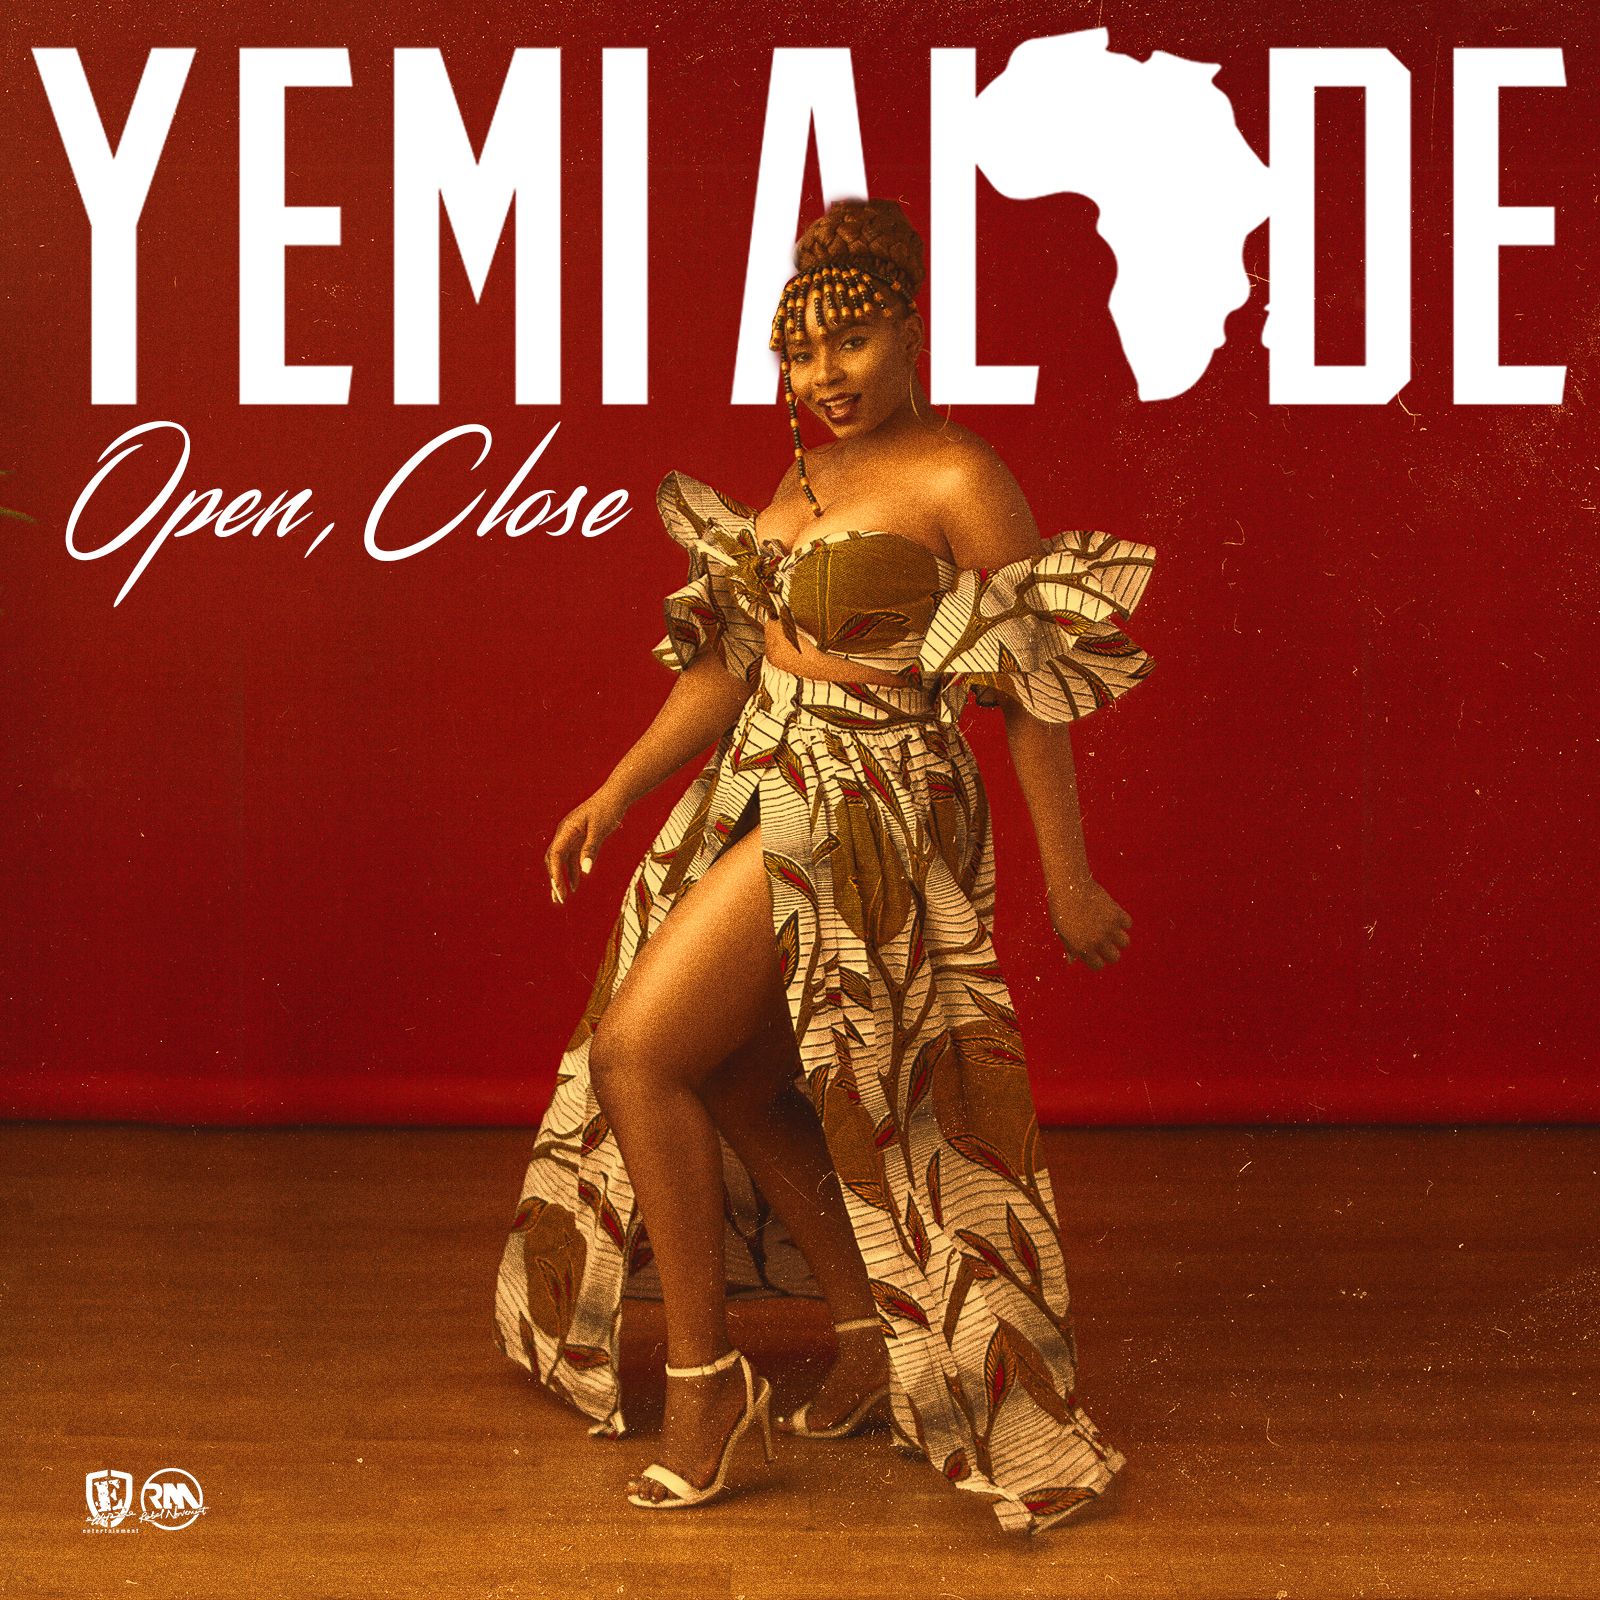 Yemi Alade - OPEN, CLOSE Artwork | AceWorldTeam.com